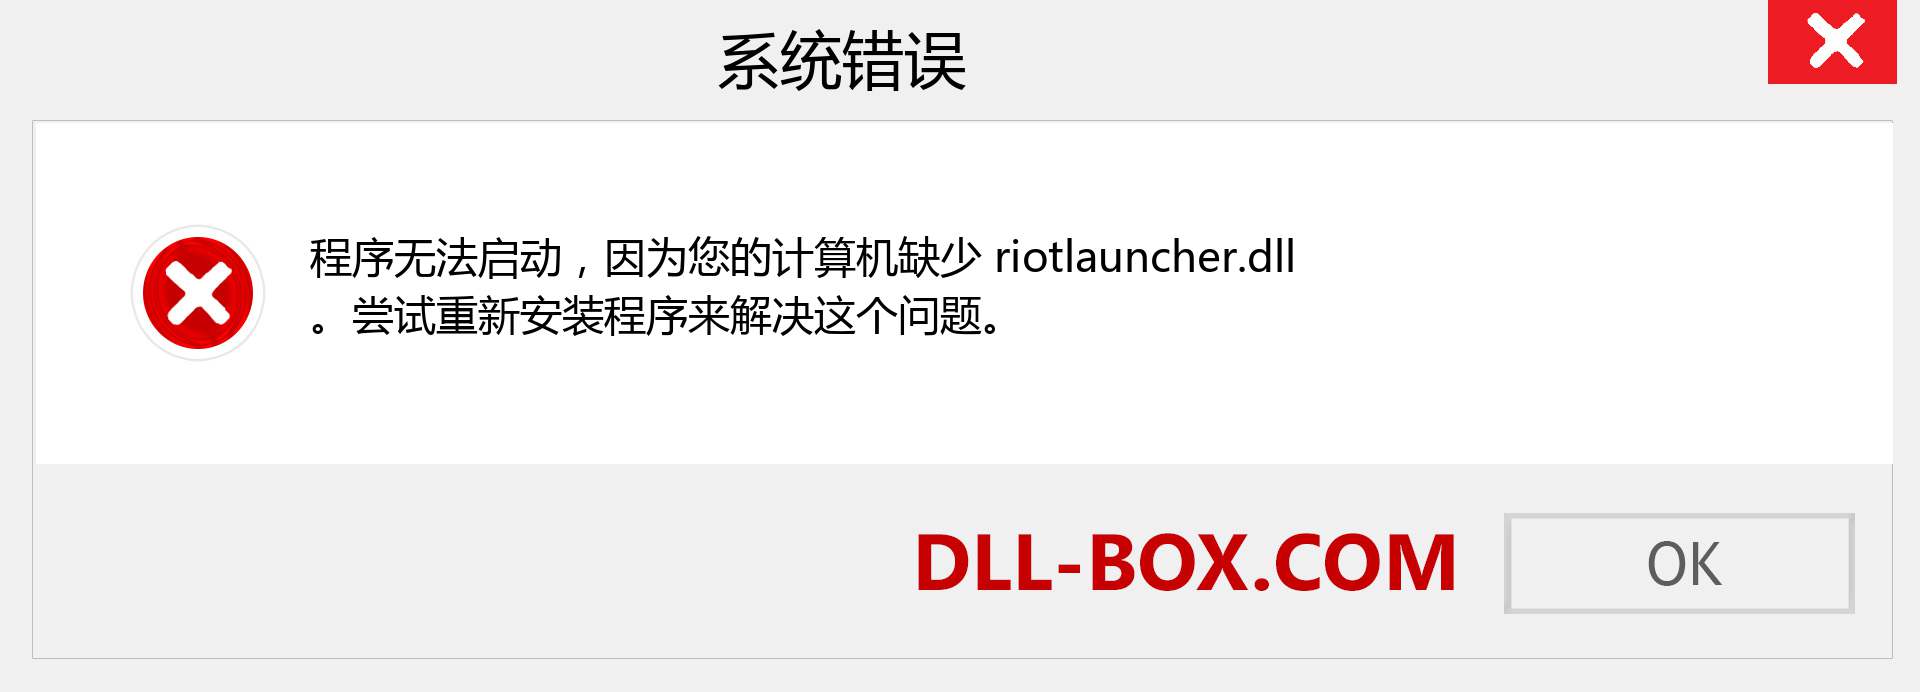 riotlauncher.dll 文件丢失？。 适用于 Windows 7、8、10 的下载 - 修复 Windows、照片、图像上的 riotlauncher dll 丢失错误